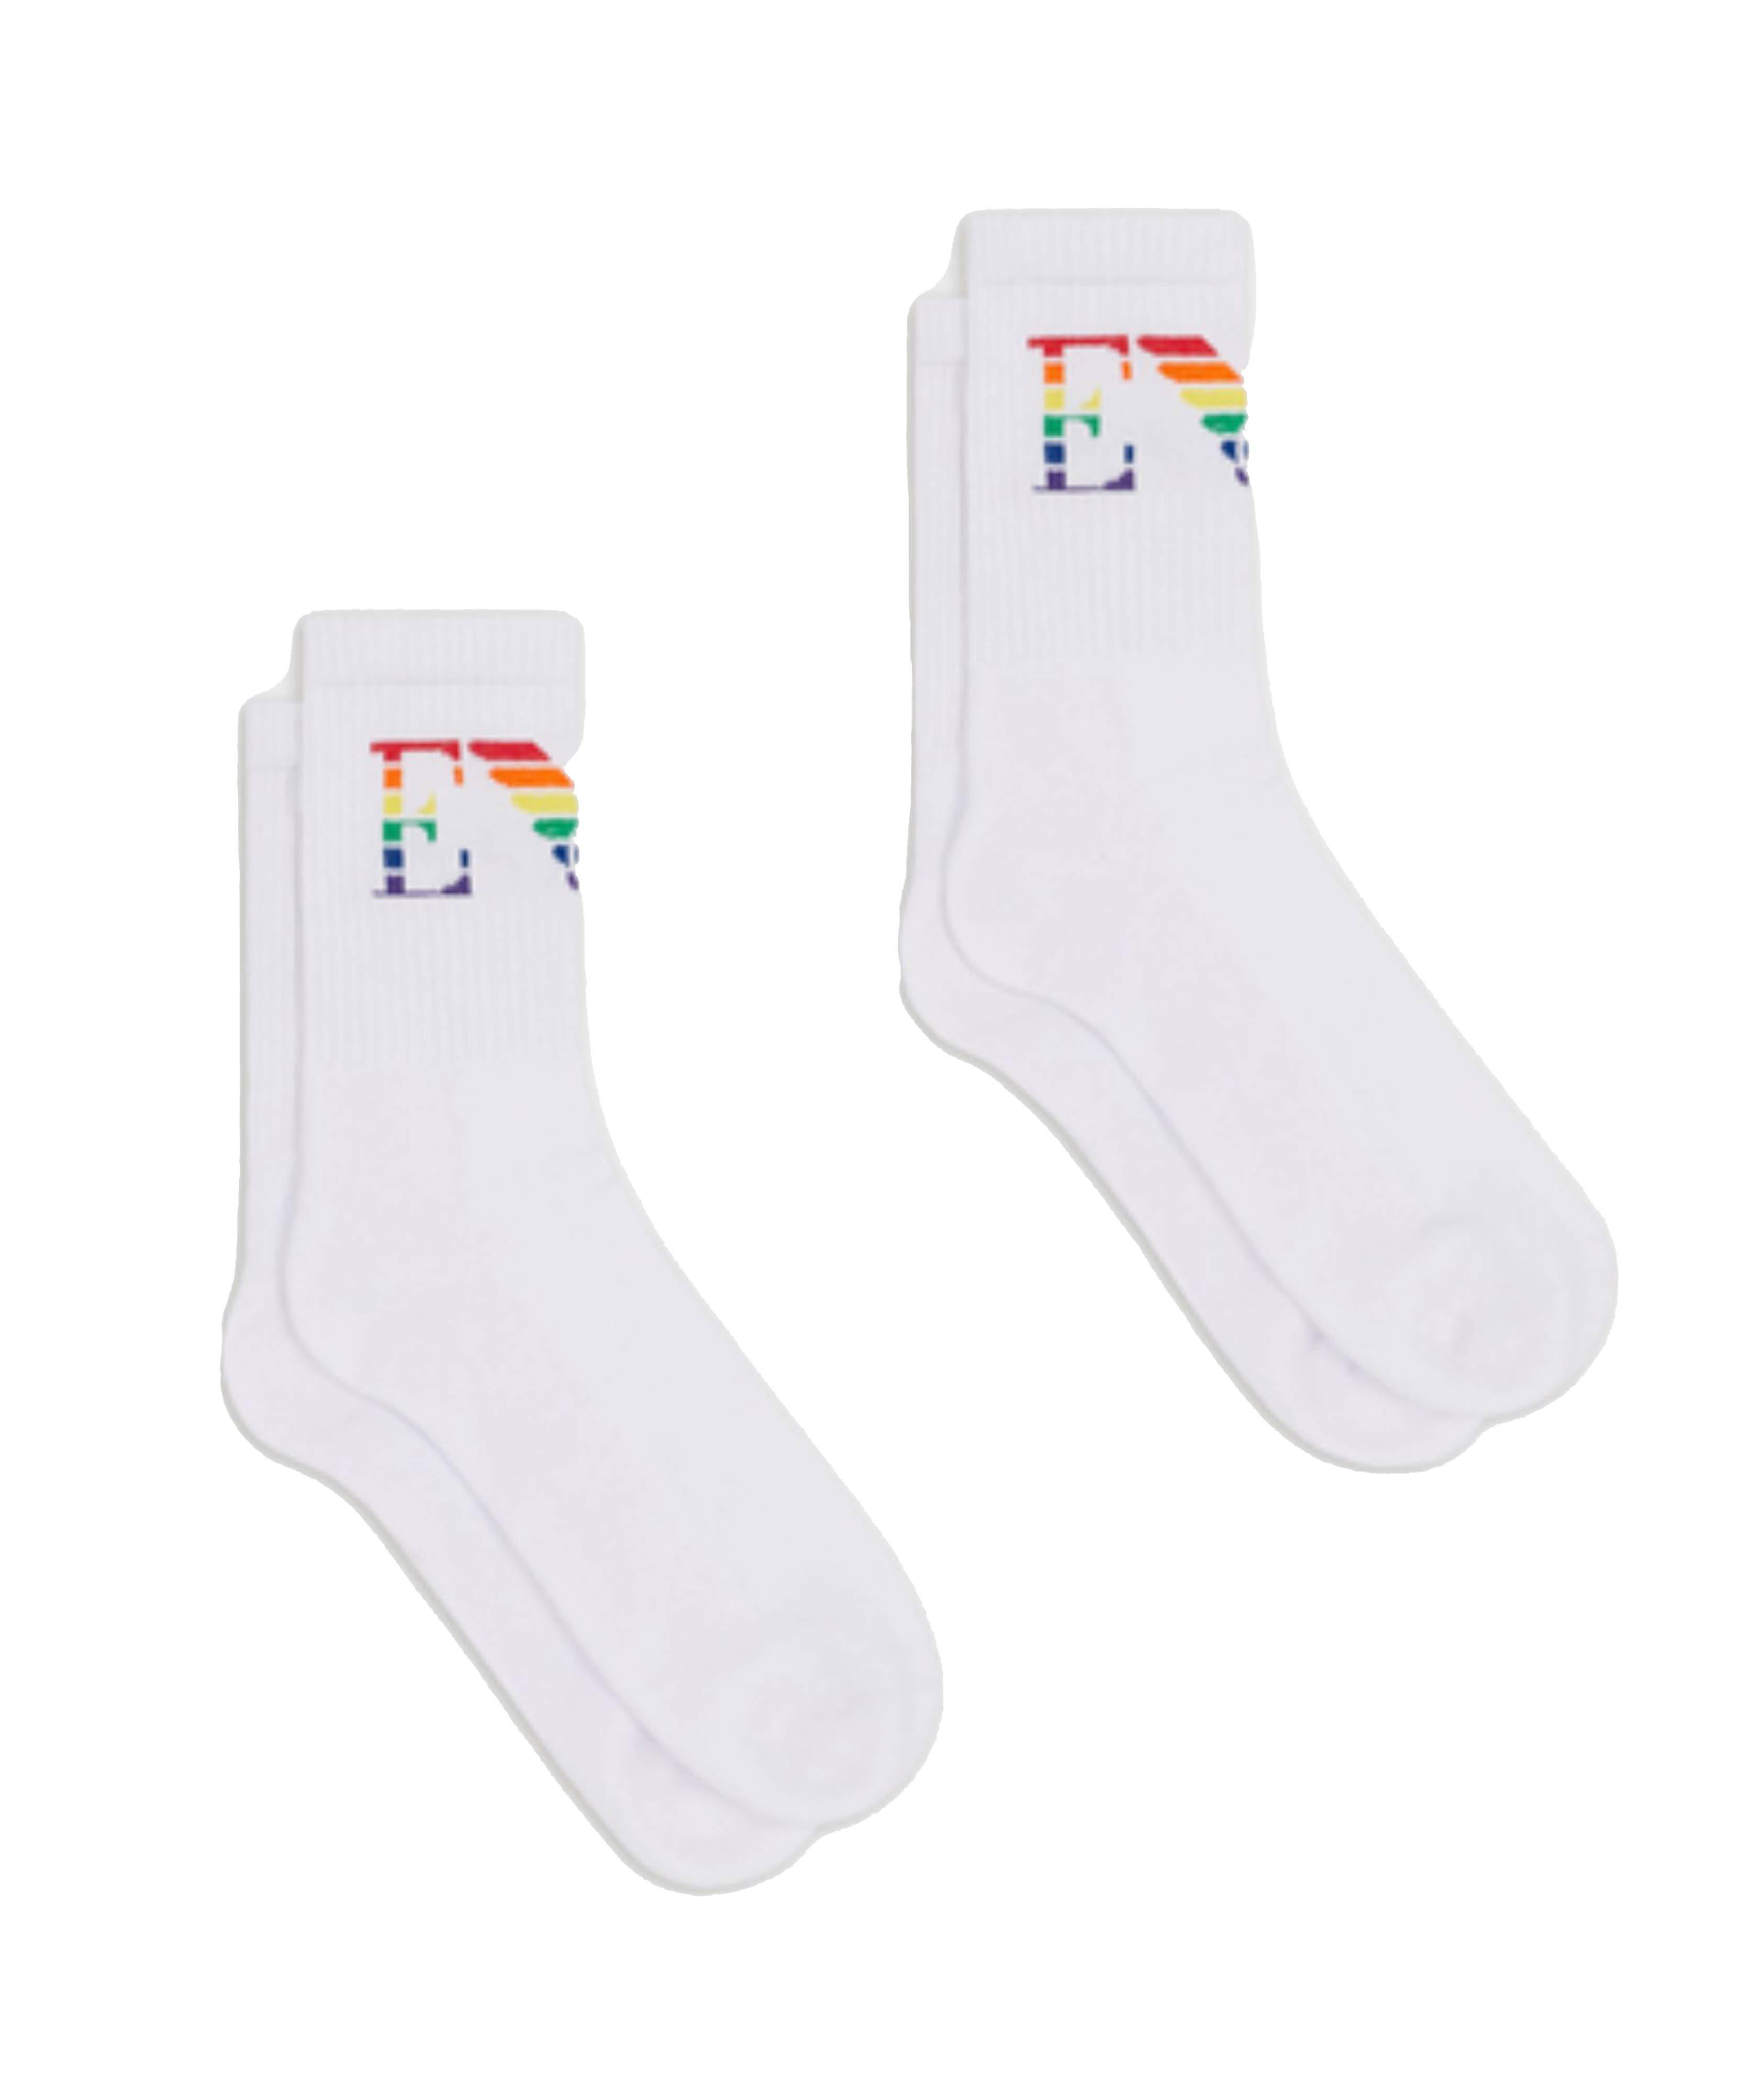 2-Pack Rainbow Cotton Socks image 0